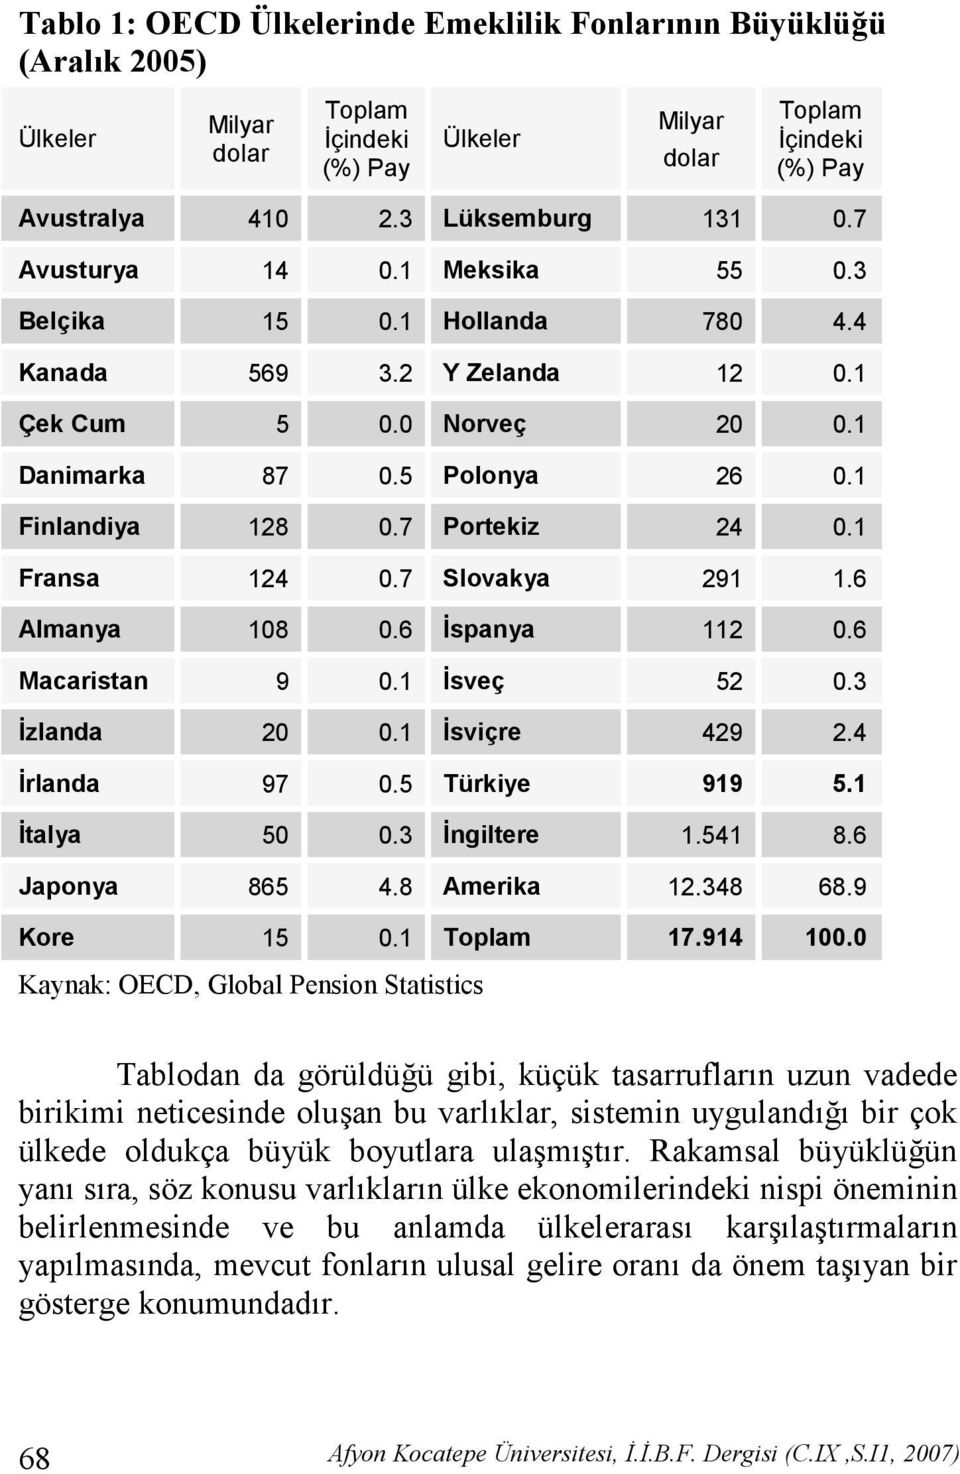 1 Fransa 124 0.7 Slovakya 291 1.6 Almanya 108 0.6 %spanya 112 0.6 Macaristan 9 0.1 %sveç 52 0.3 %zlanda 20 0.1 %sviçre 429 2.4 %rlanda 97 0.5 Türkiye 919 5.1 %talya 50 0.3 %ngiltere 1.541 8.